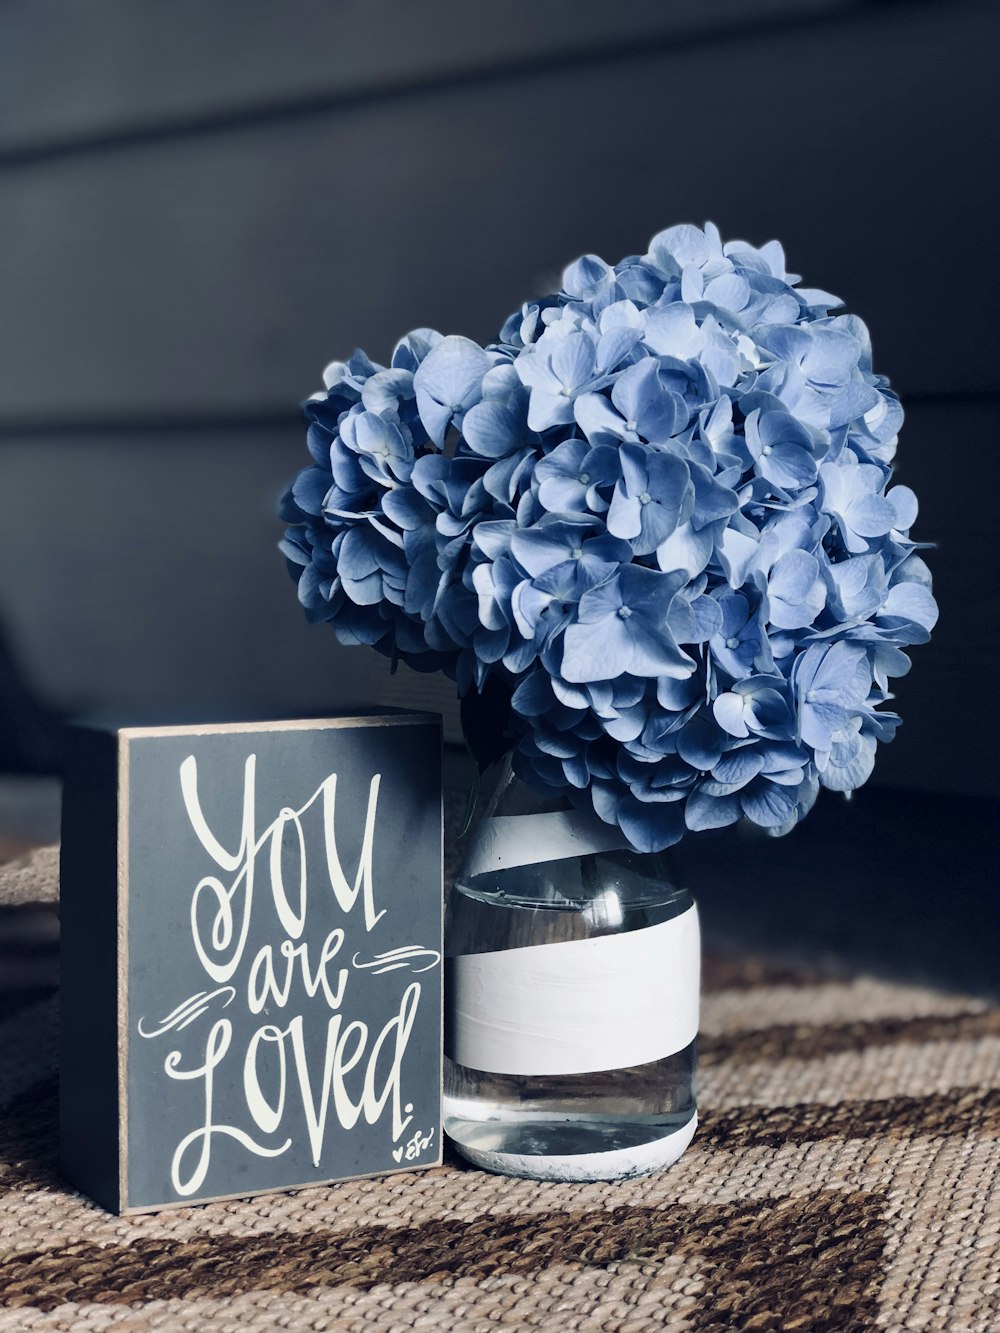 ガラスの花瓶に咲いた青い花